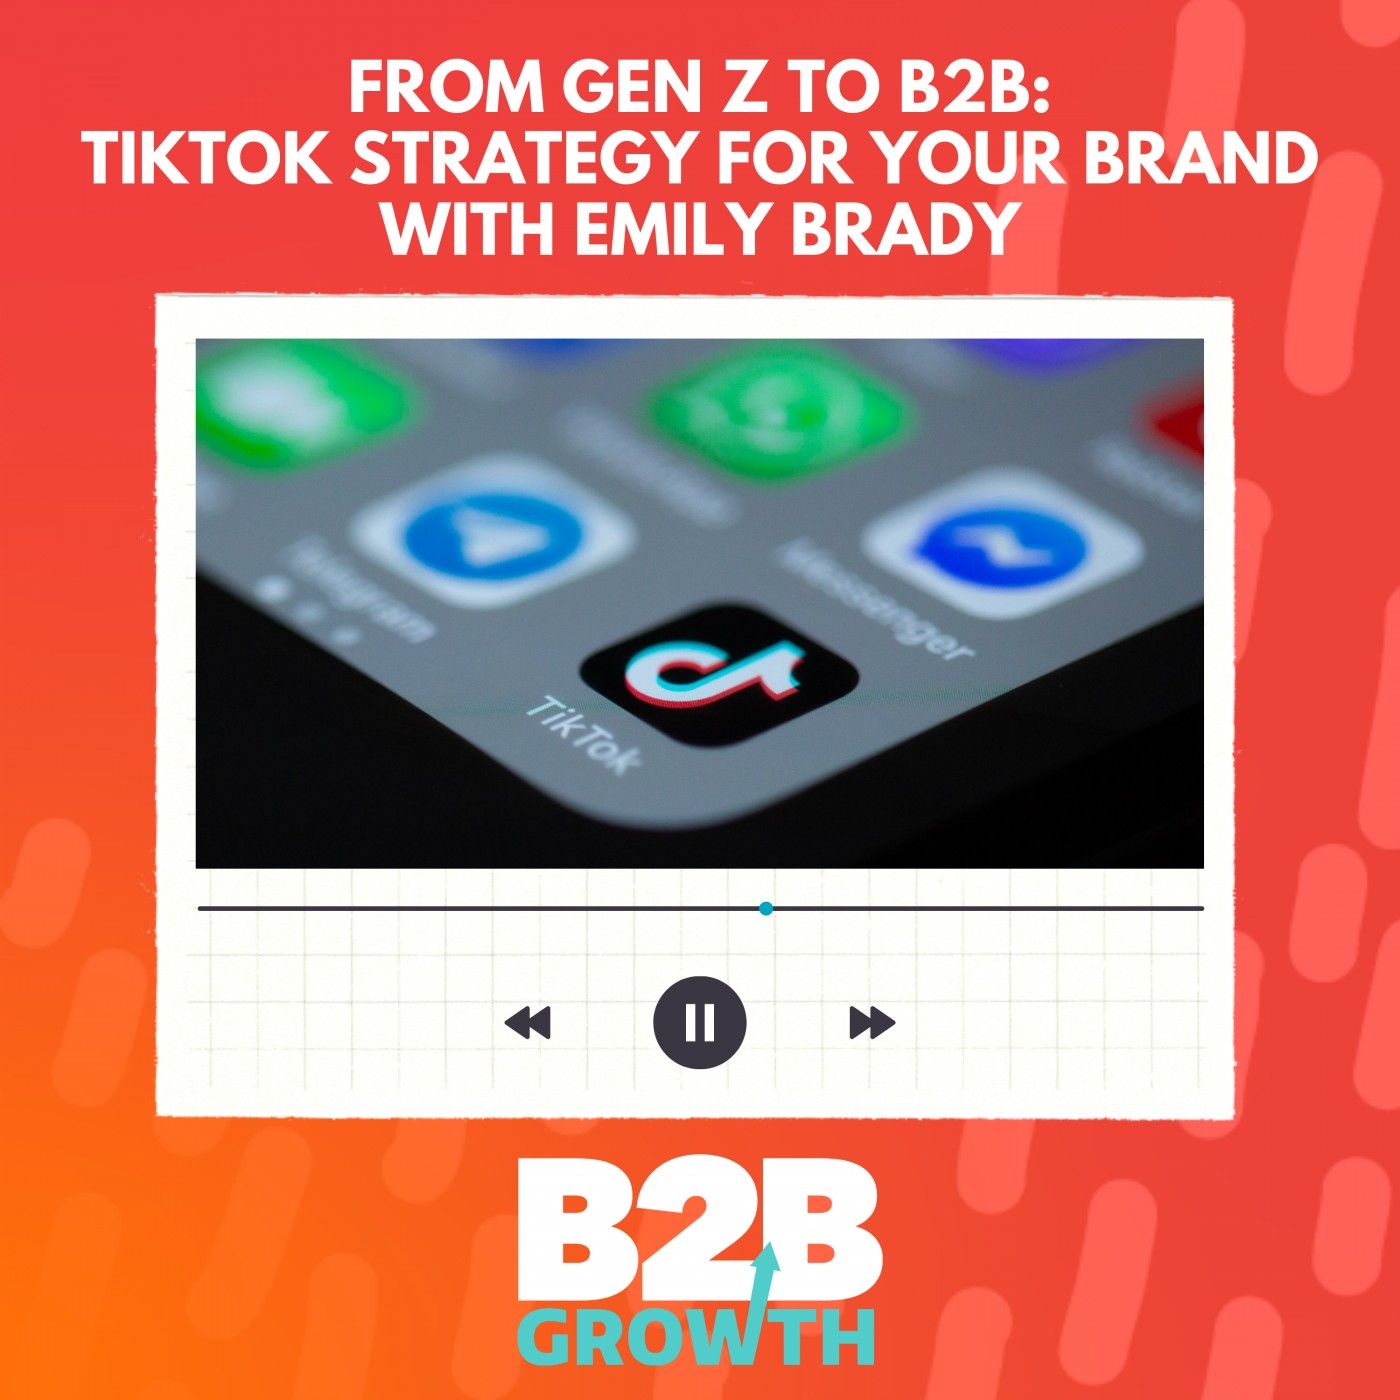 From Gen Z to B2B: TikTok Strategy for Your Brand, with Emily Brady